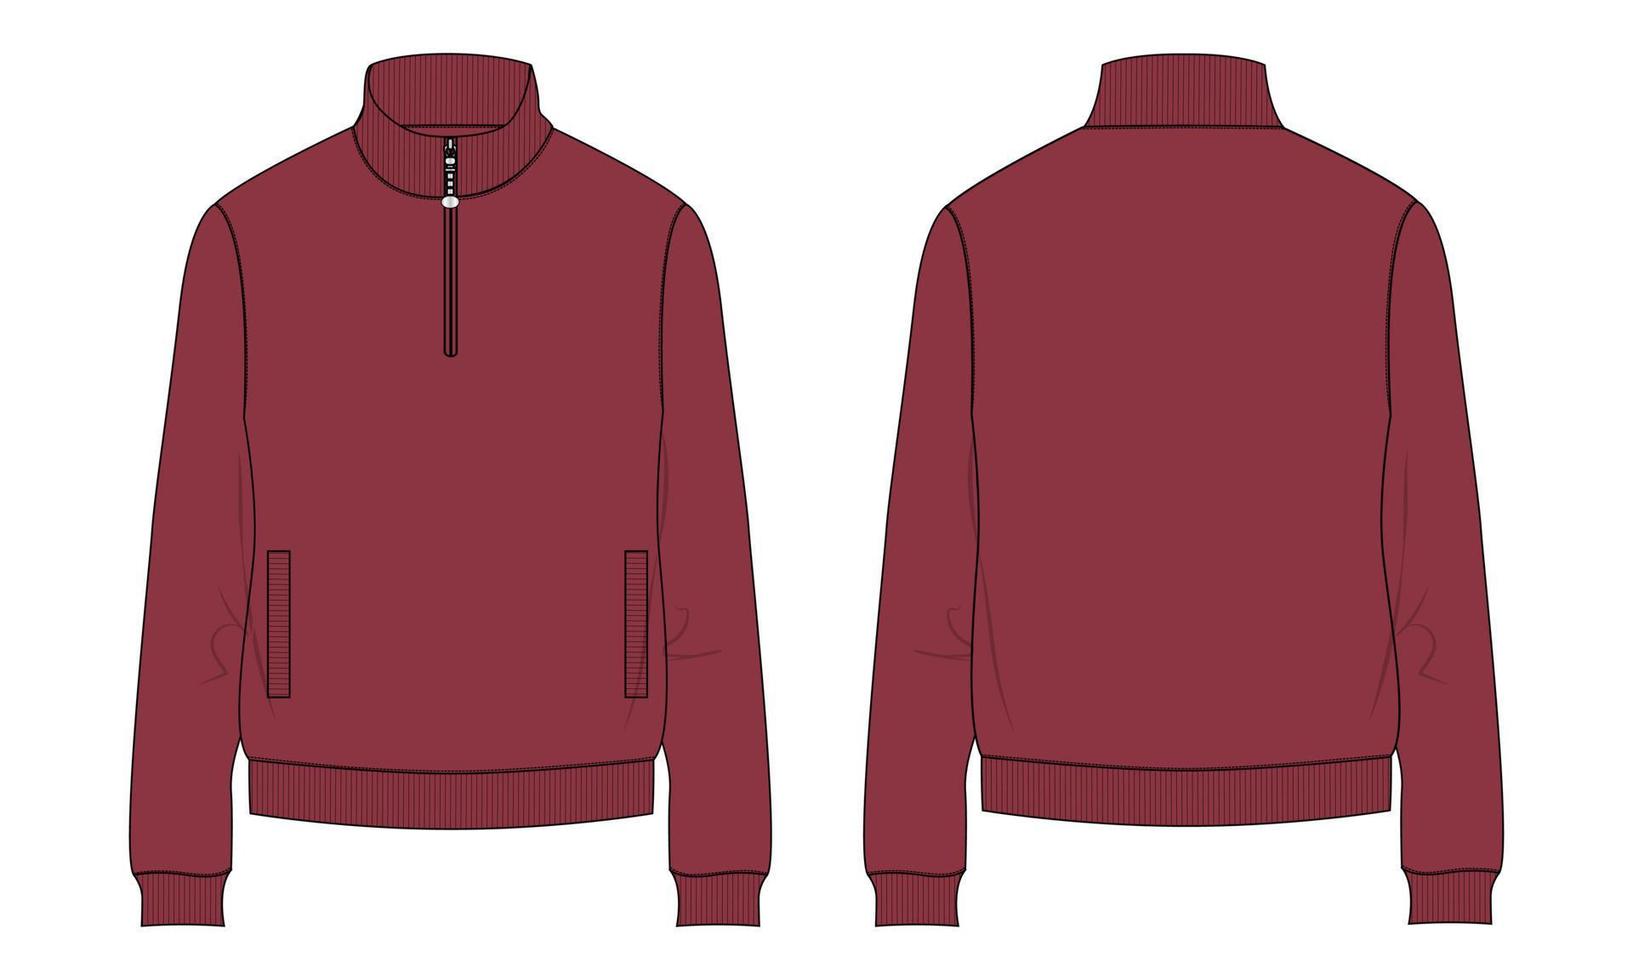 jaqueta de moletom de manga longa técnica de moda desenho plano ilustração vetorial modelo de cor vermelha vetor